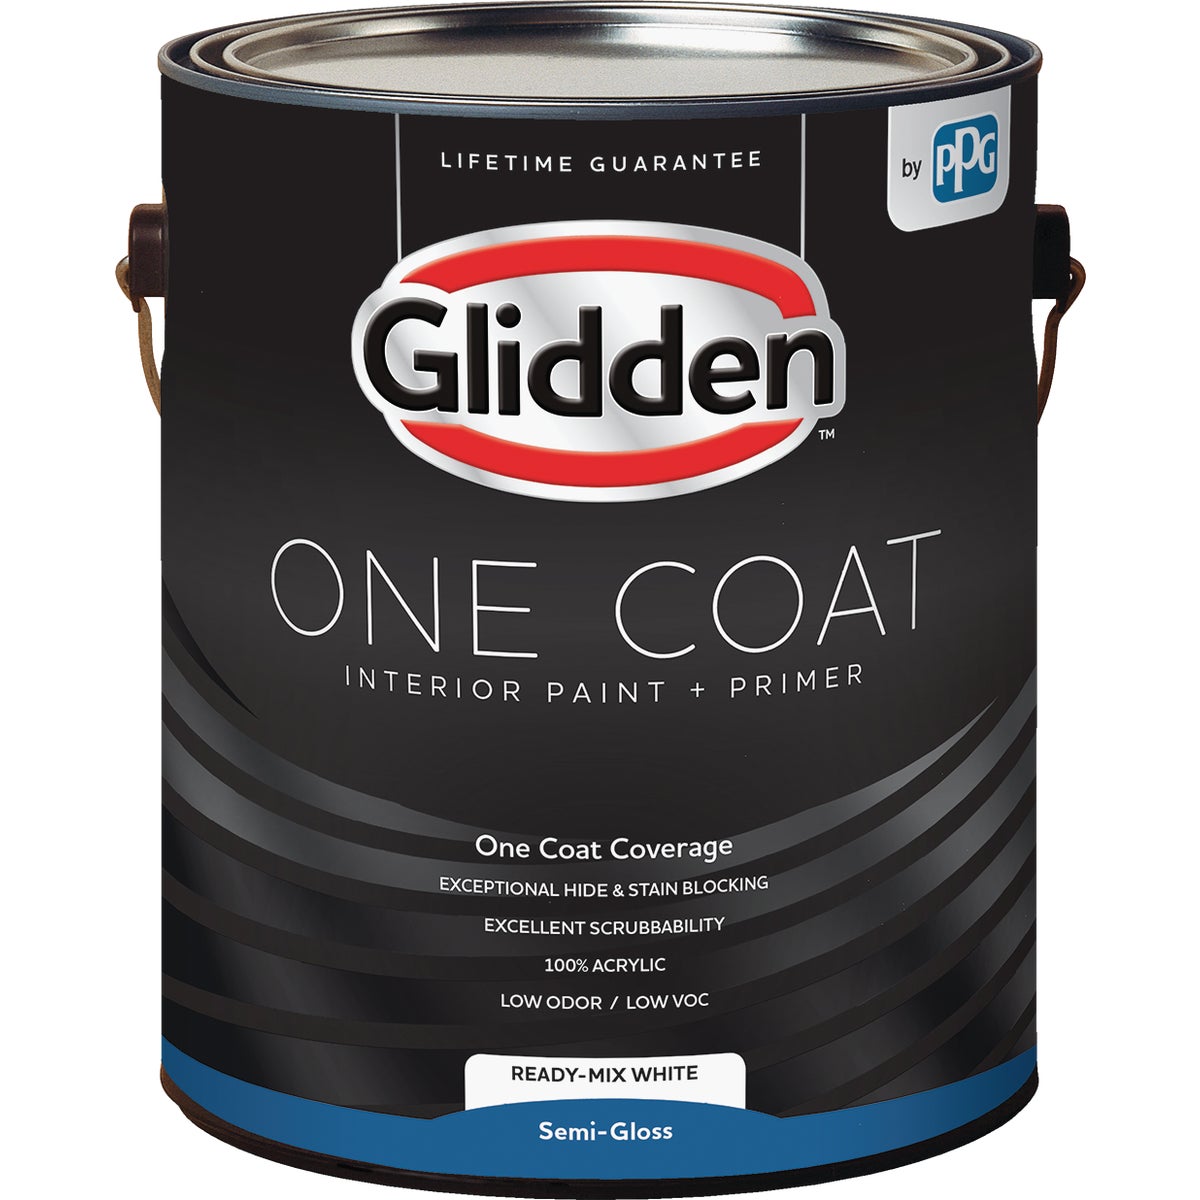 Glidden One Coat Interior Paint + Primer Semi-Gloss Ready Mix White 1 Gallon